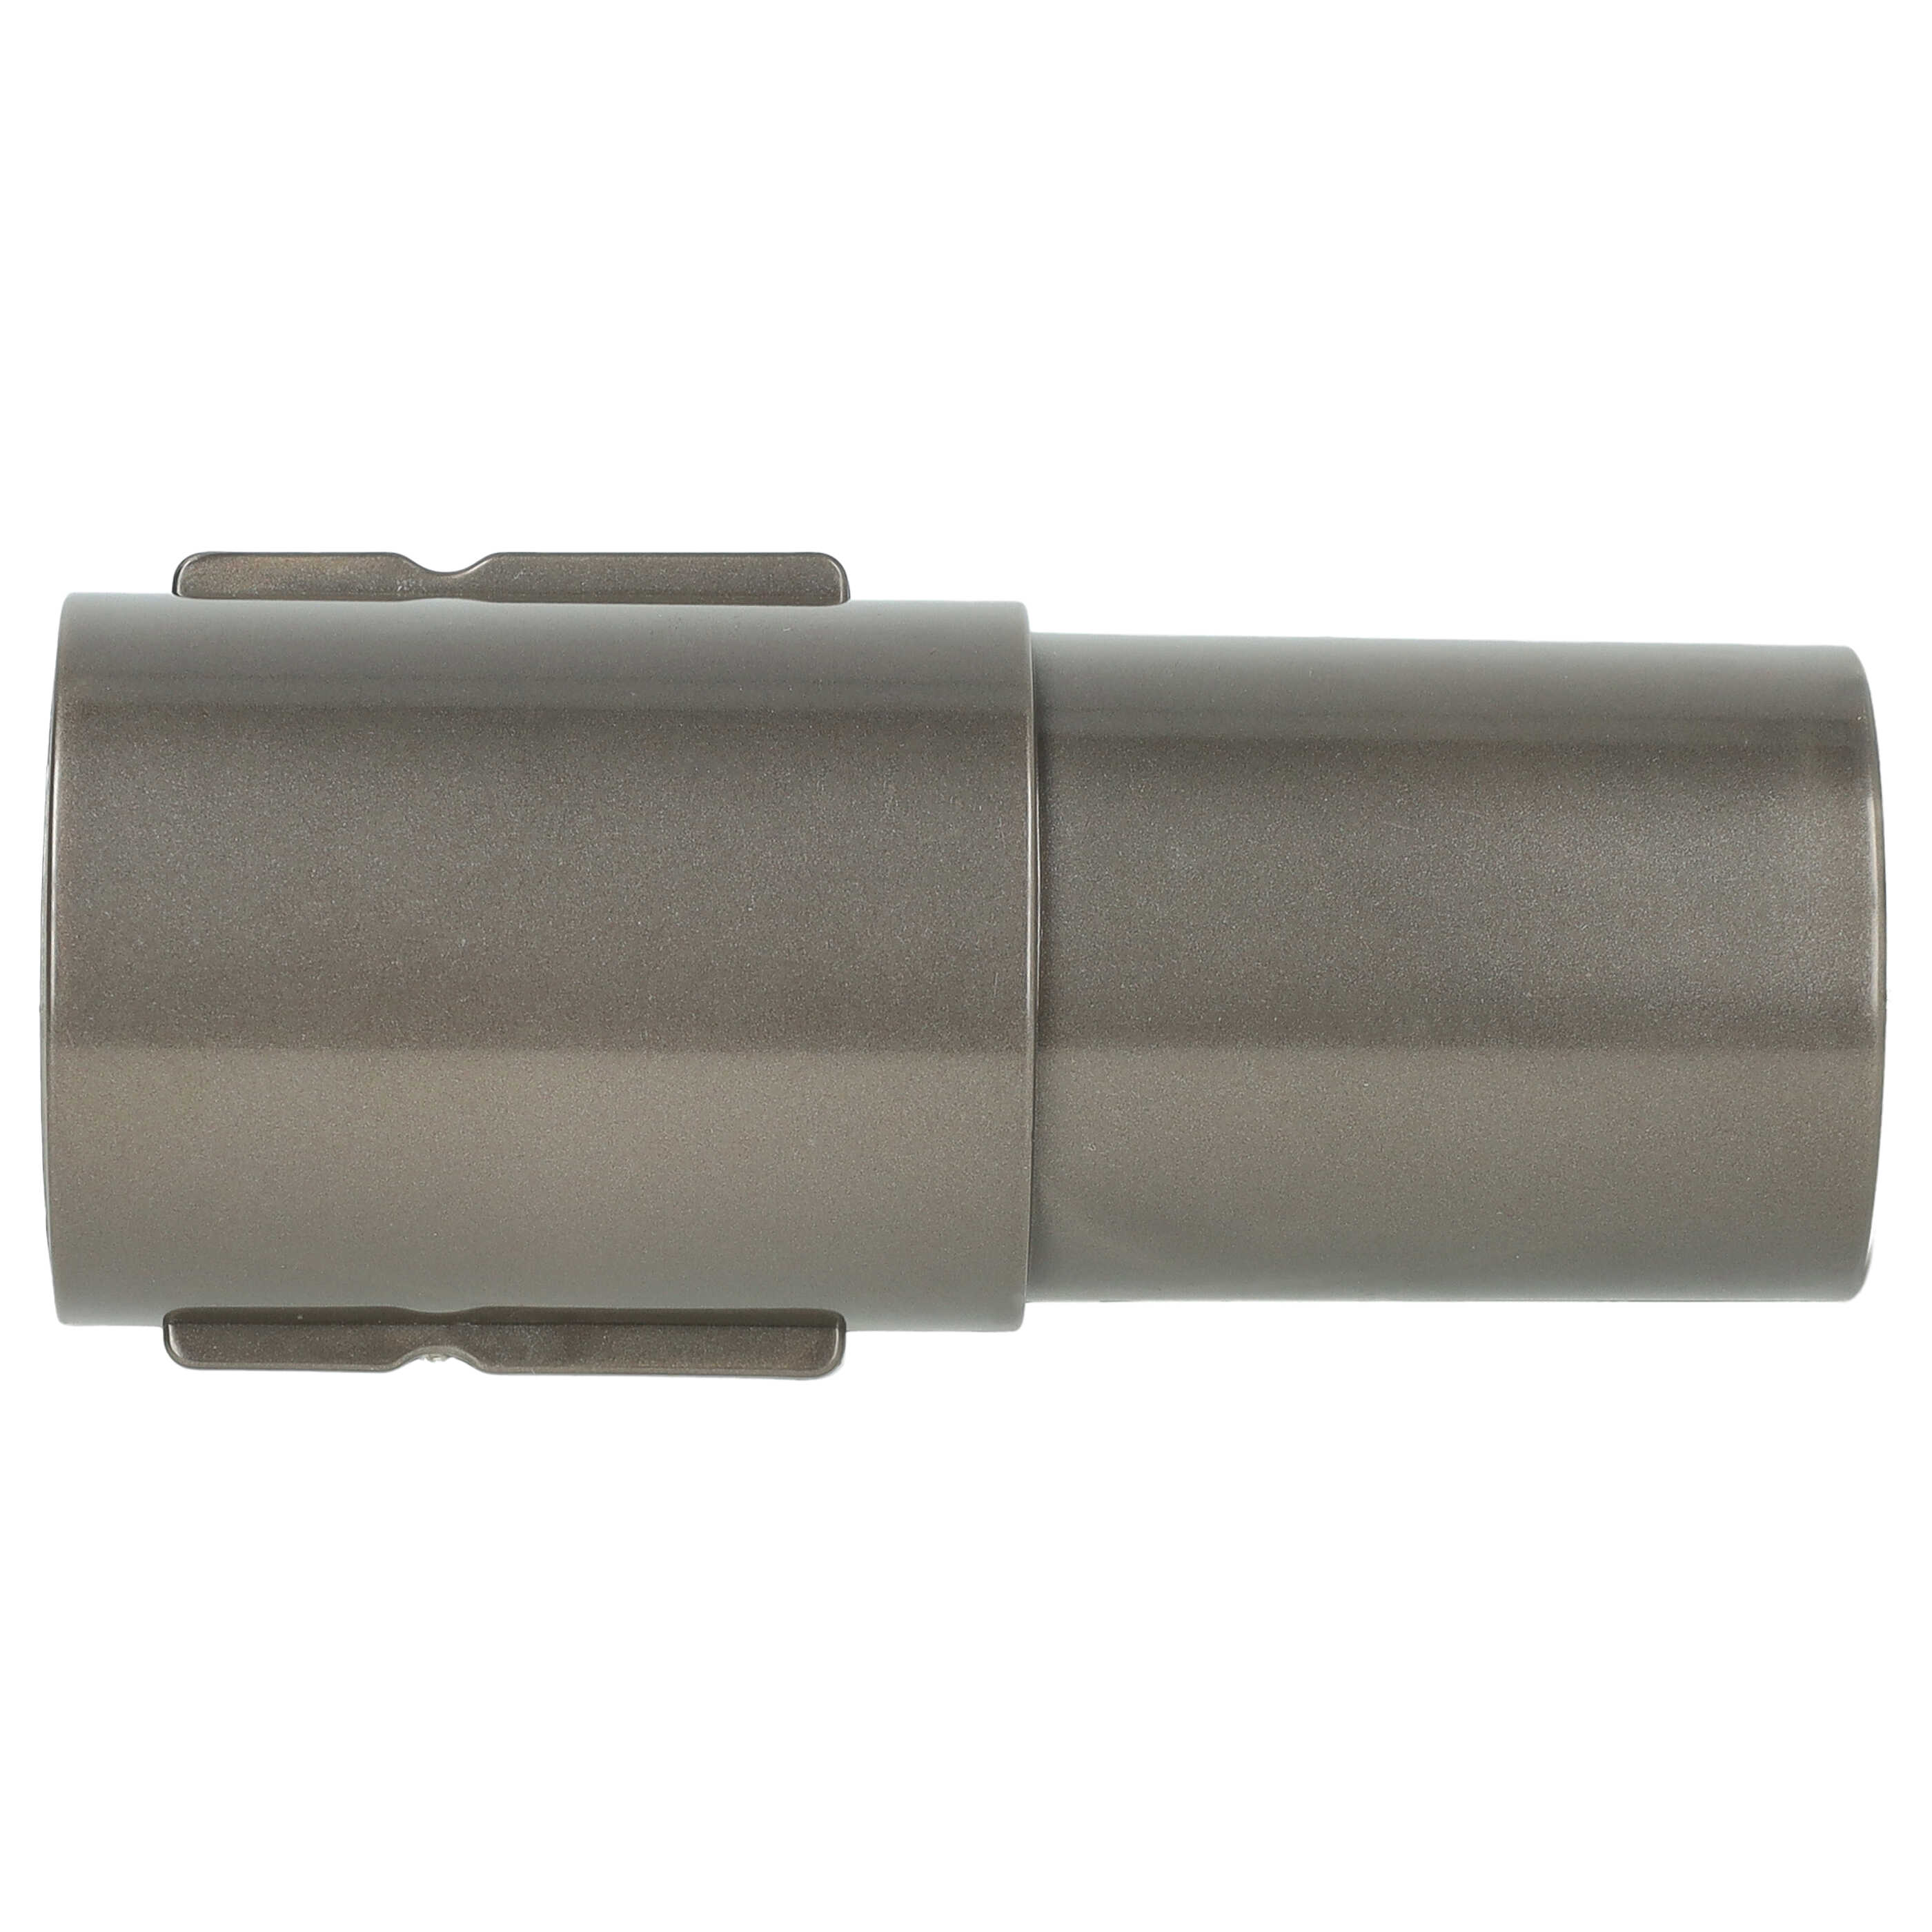 Adaptador conexión accesorios 32mm para aspiradora Dyson SV10 - gris